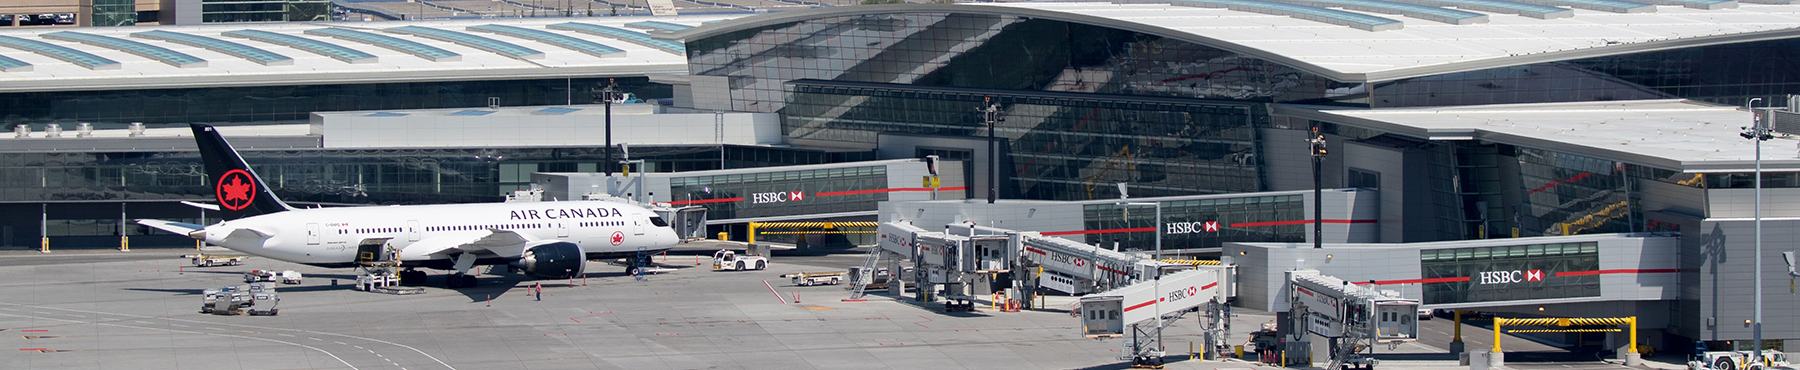 Aeroporto internazionale di Calgary